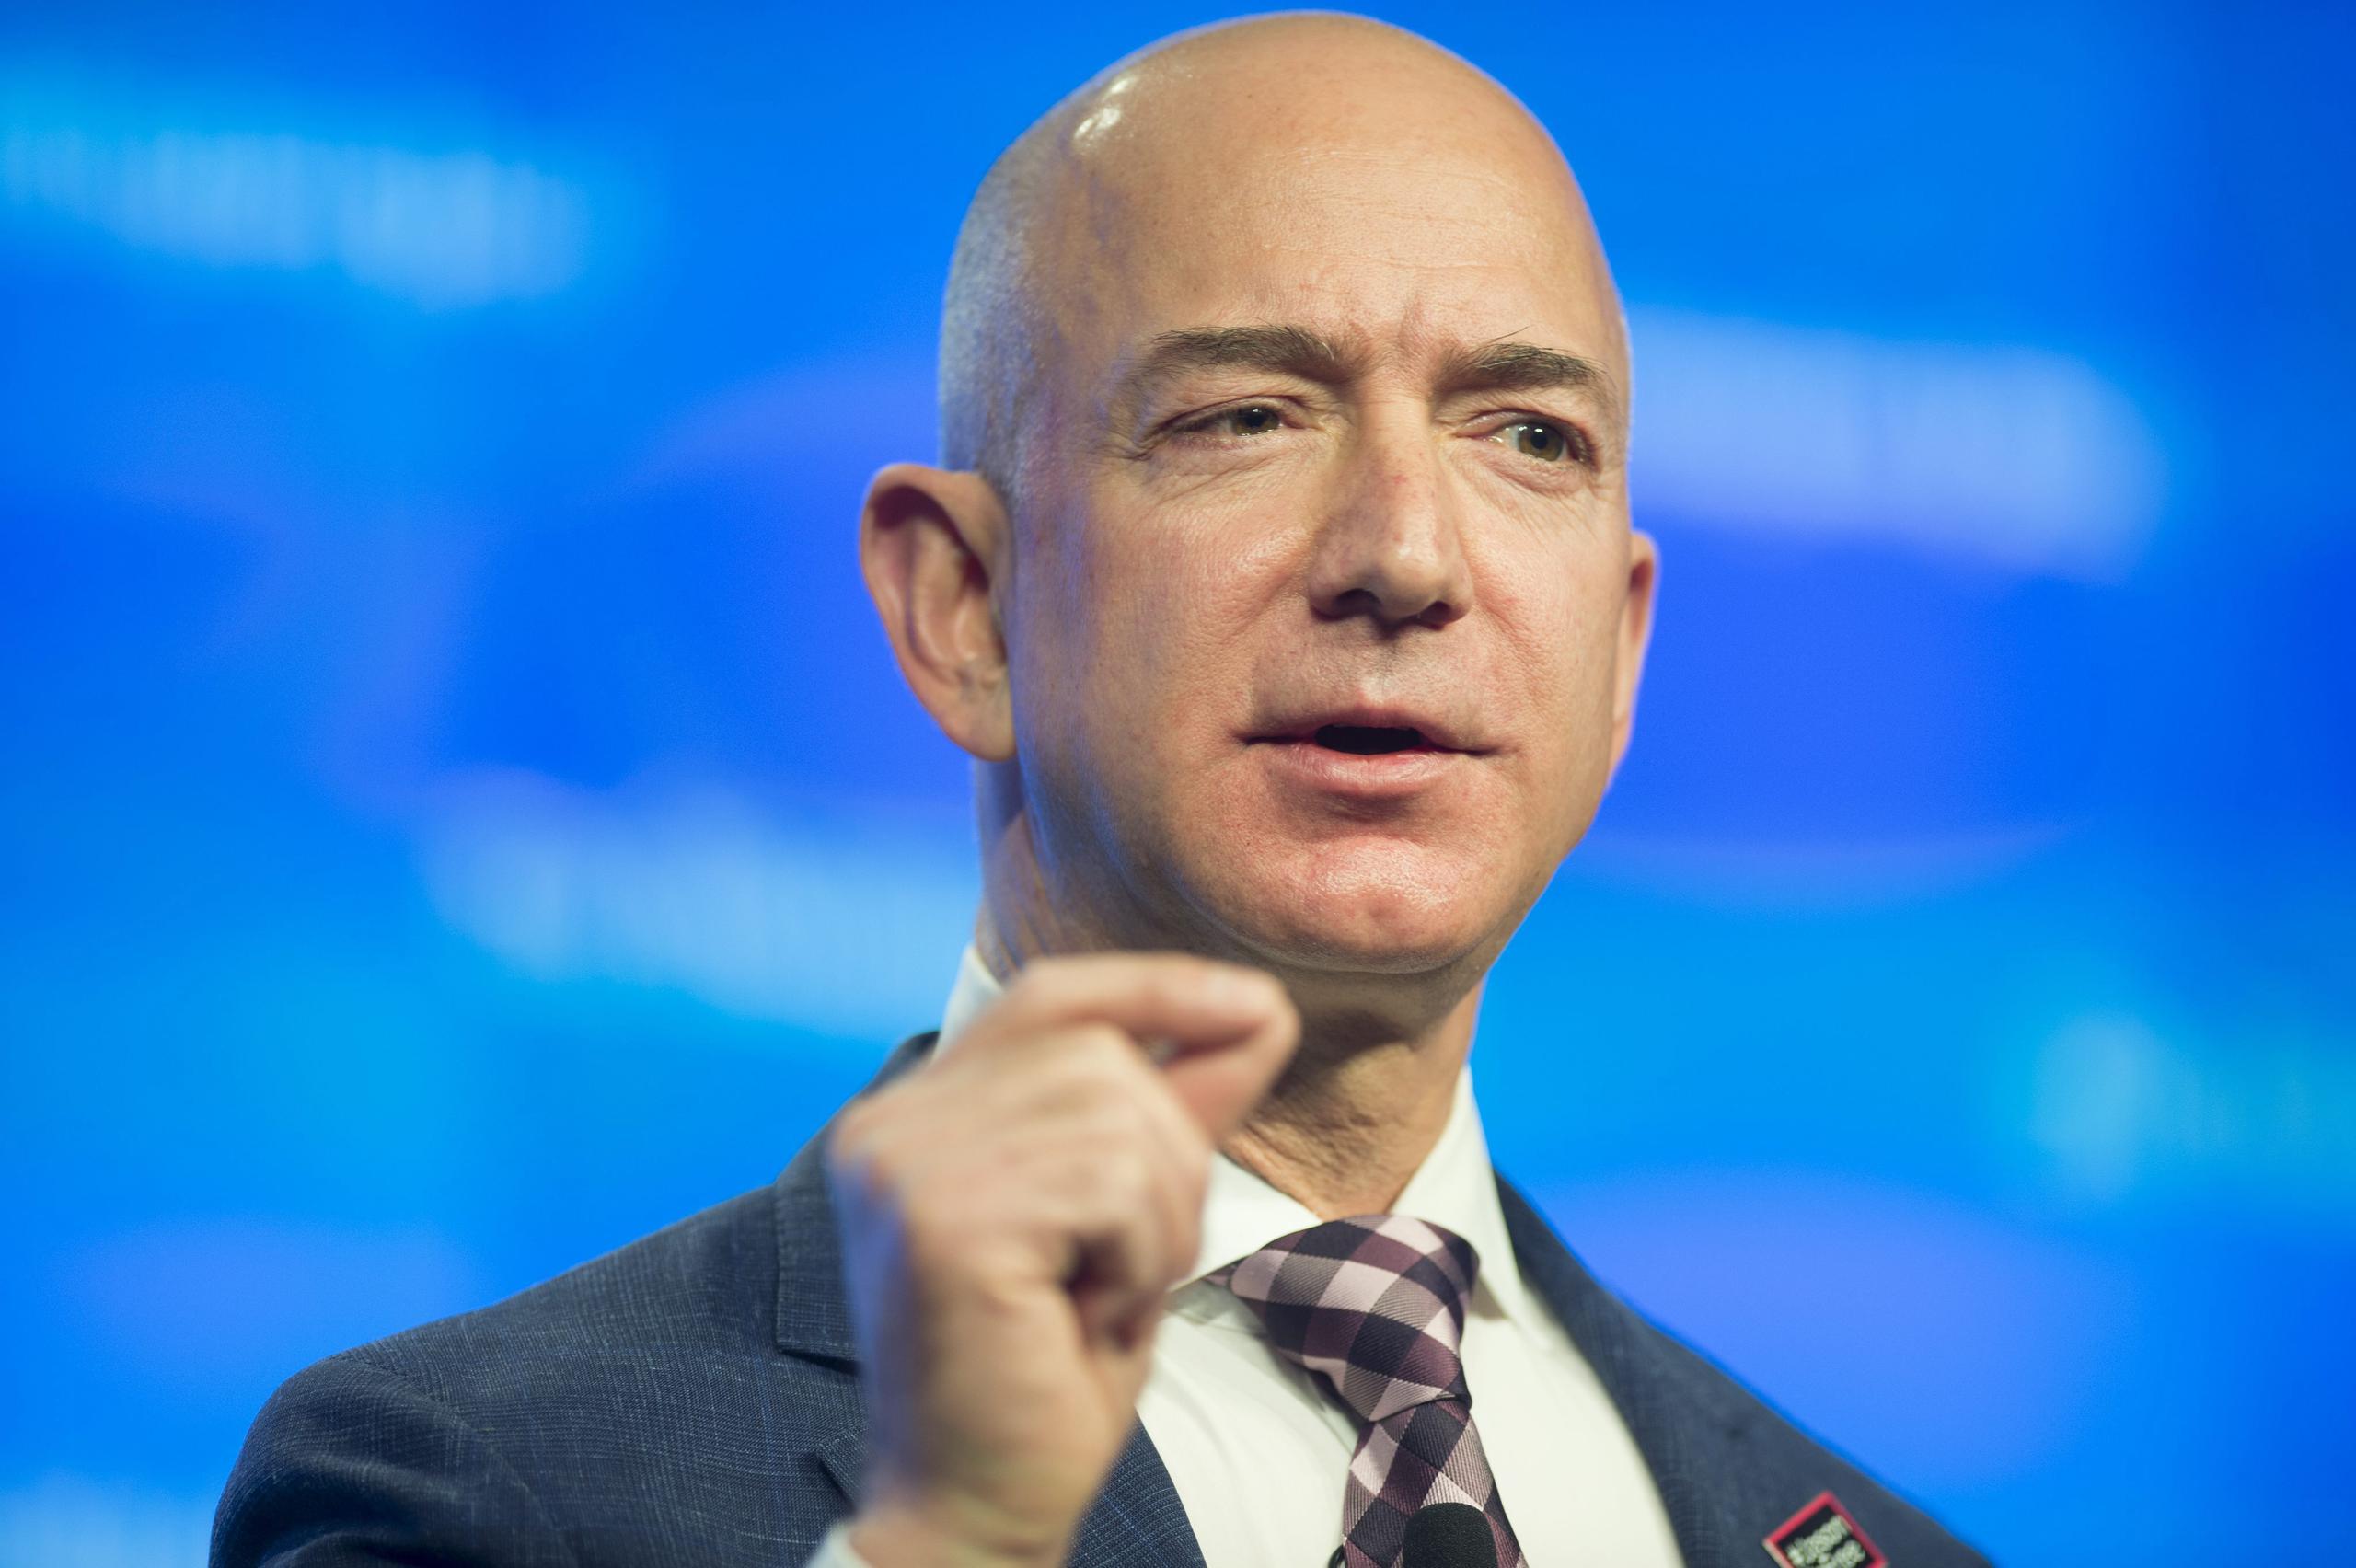 “El siguiente paso en la protección de nuestros empleados podría ser practicar pruebas de forma regular a todos los empleados de Amazon, incluyendo aquellos que no muestran síntomas”, dijo Jeff Bezos, fundador de Amazon.